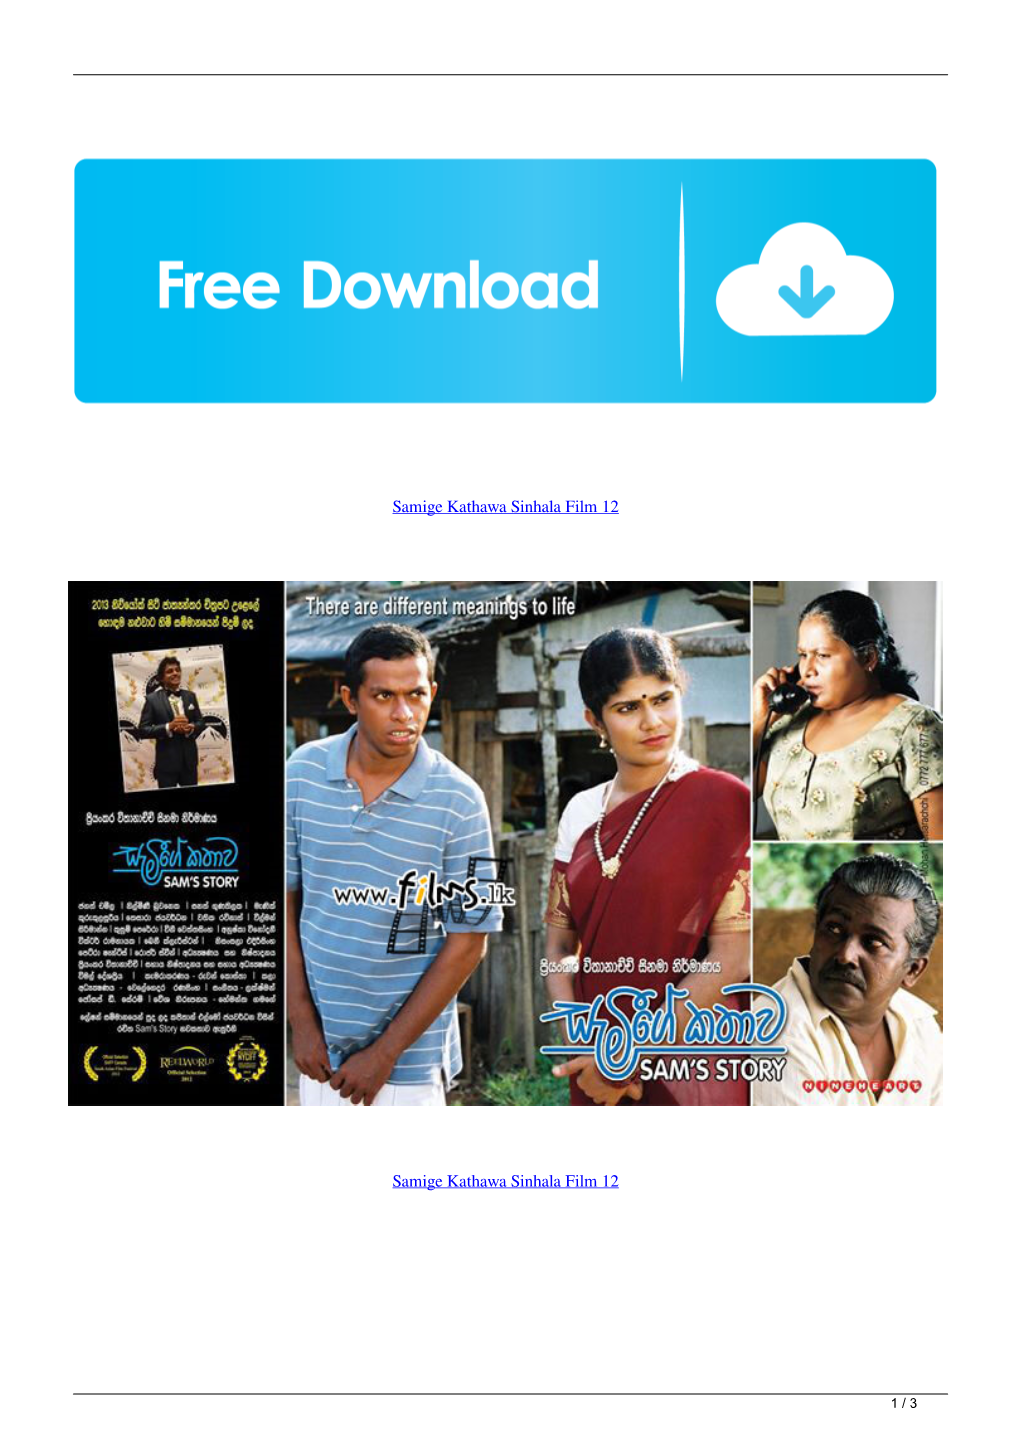 Samige Kathawa Sinhala Film 12